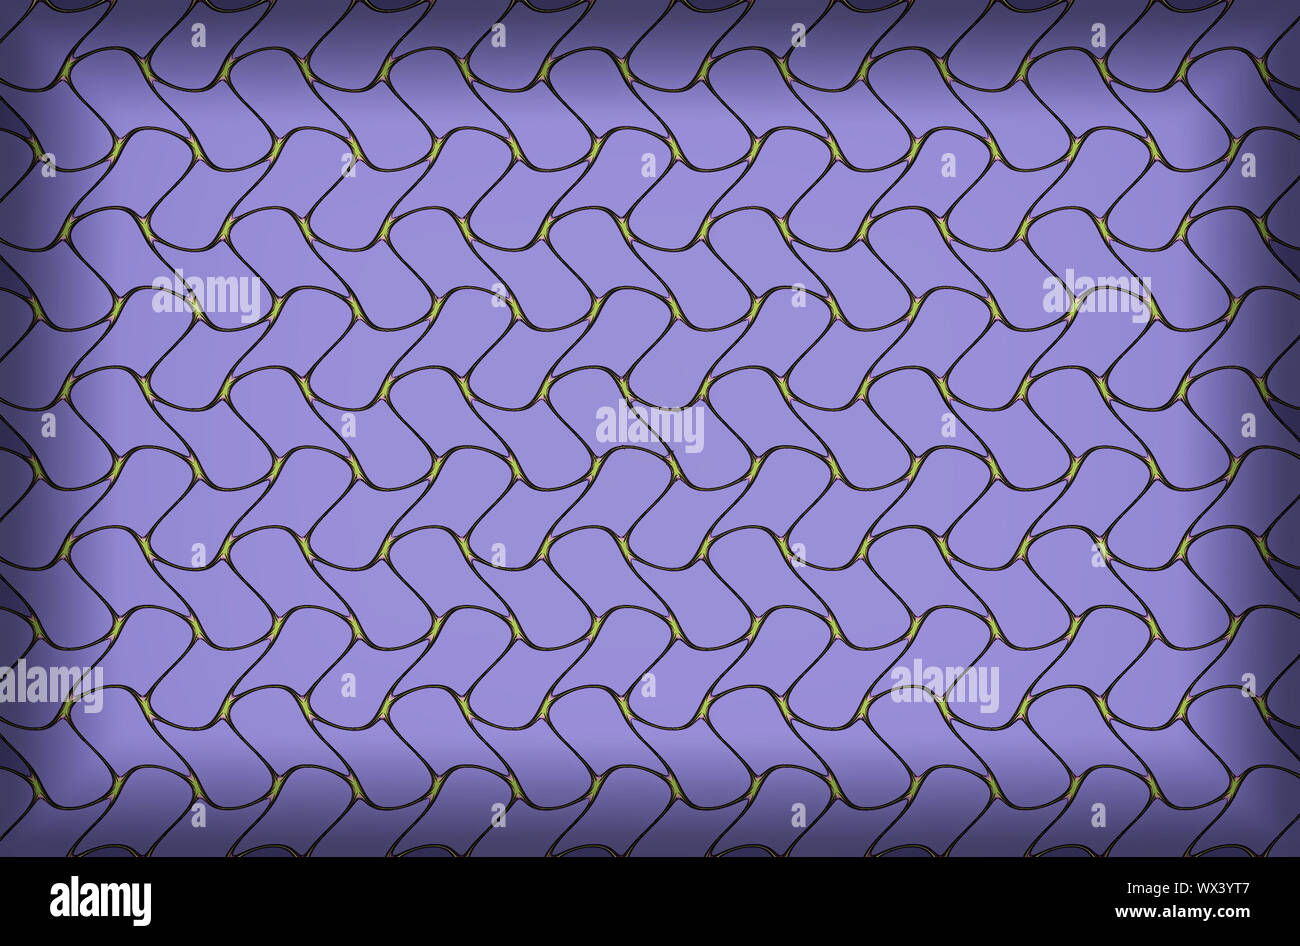 Fraktal Bild mit einem Muster von Zickzack. Stockfoto